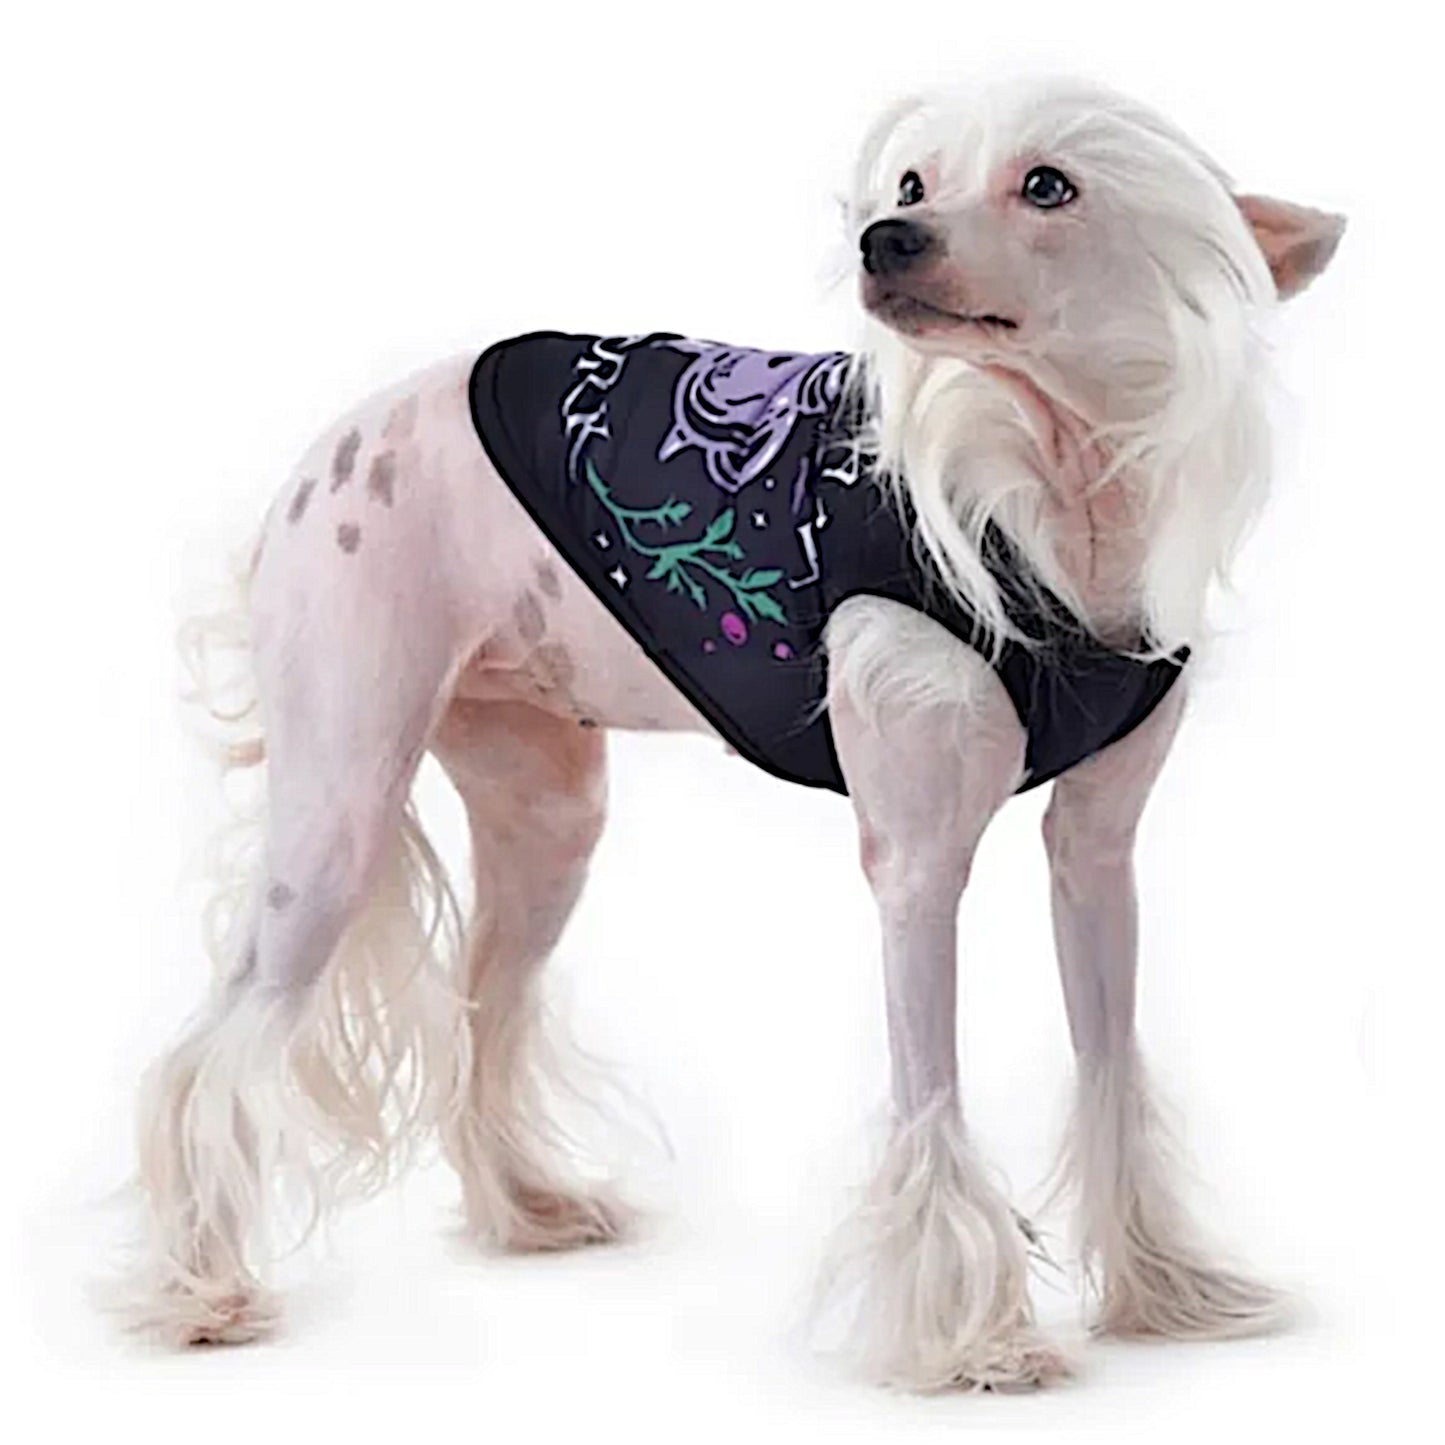 Pet Vest | Witch's Assistant At Work Black Purple Dog Or Cat Vest - Rogue + Wolf - Pet Vests